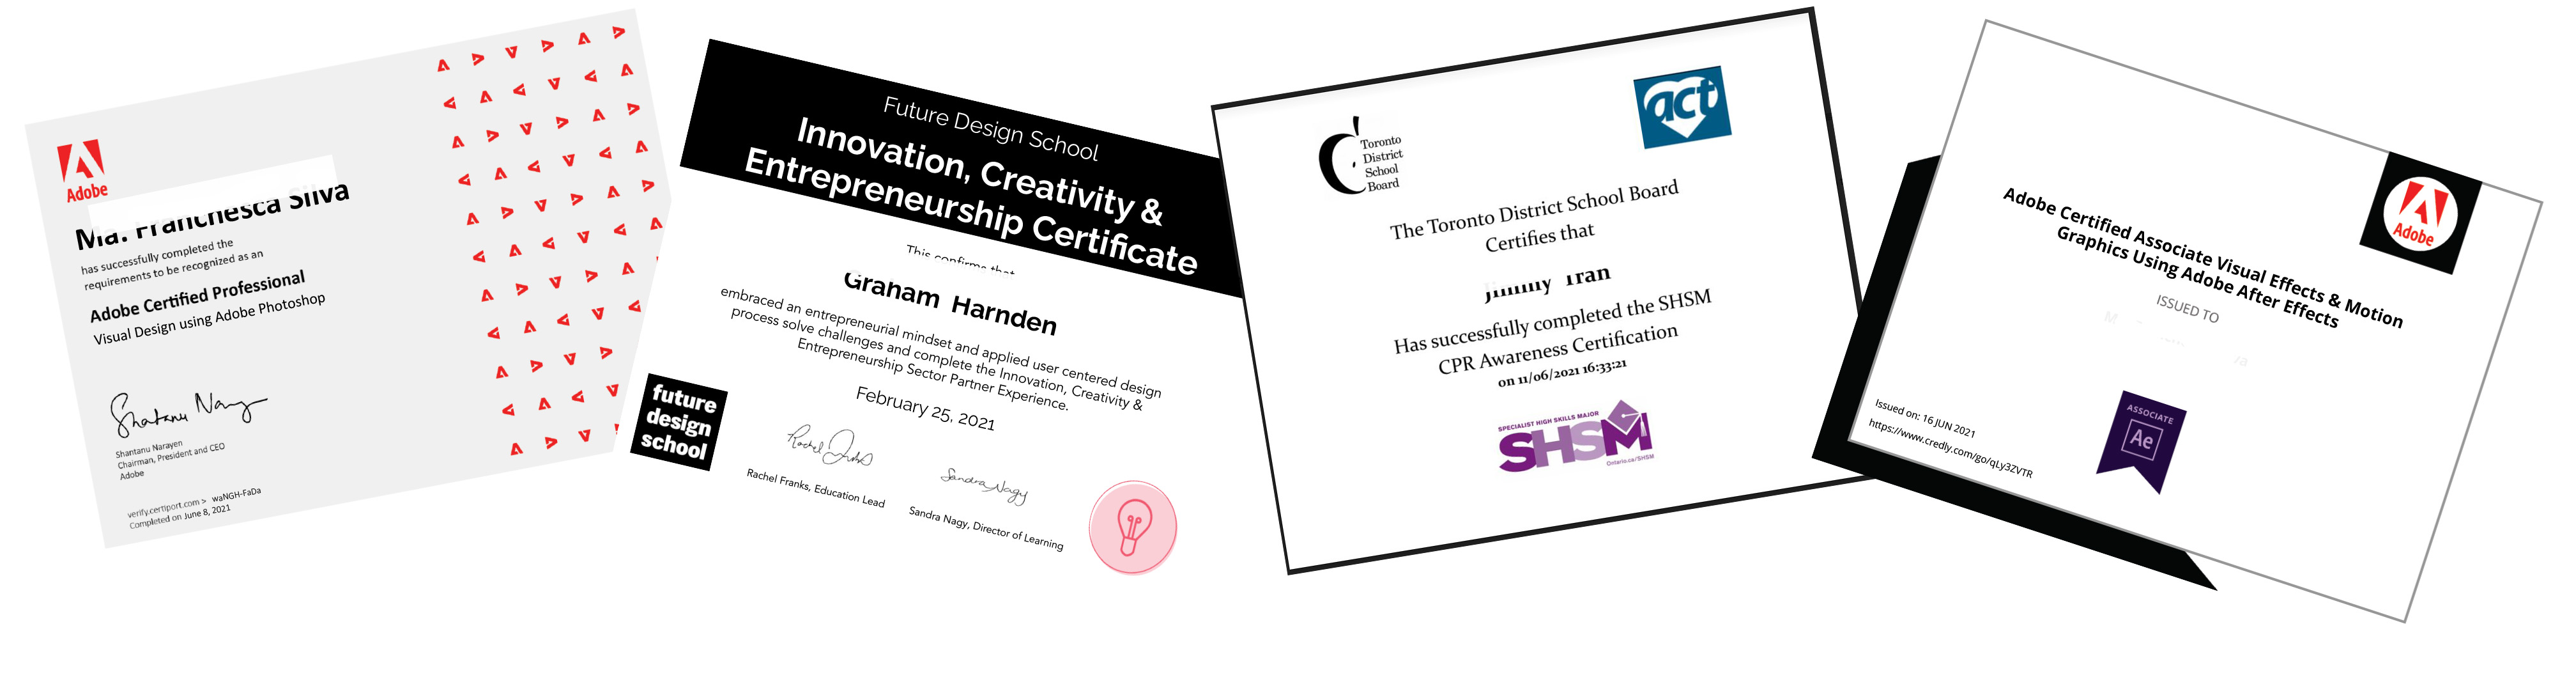 SHSM certification banner